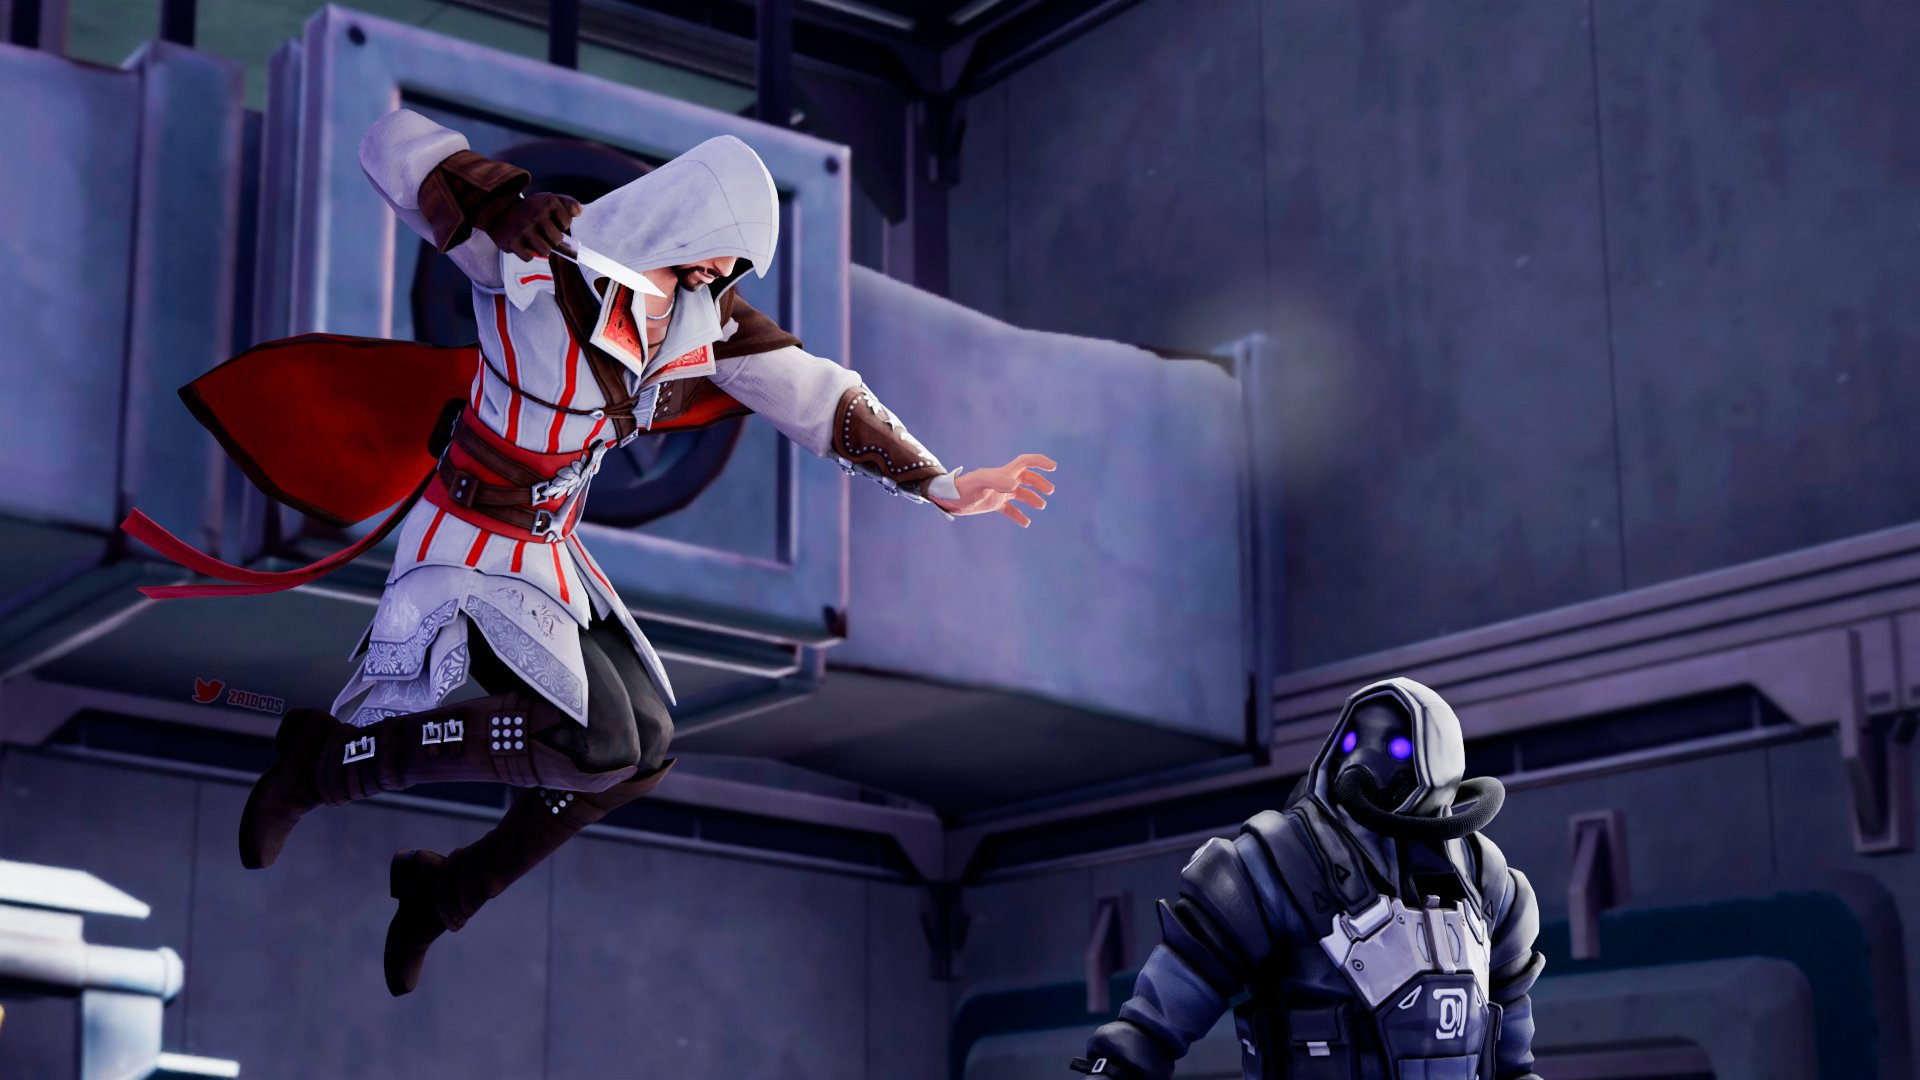 Ezio Auditore Fortnite wallpaper